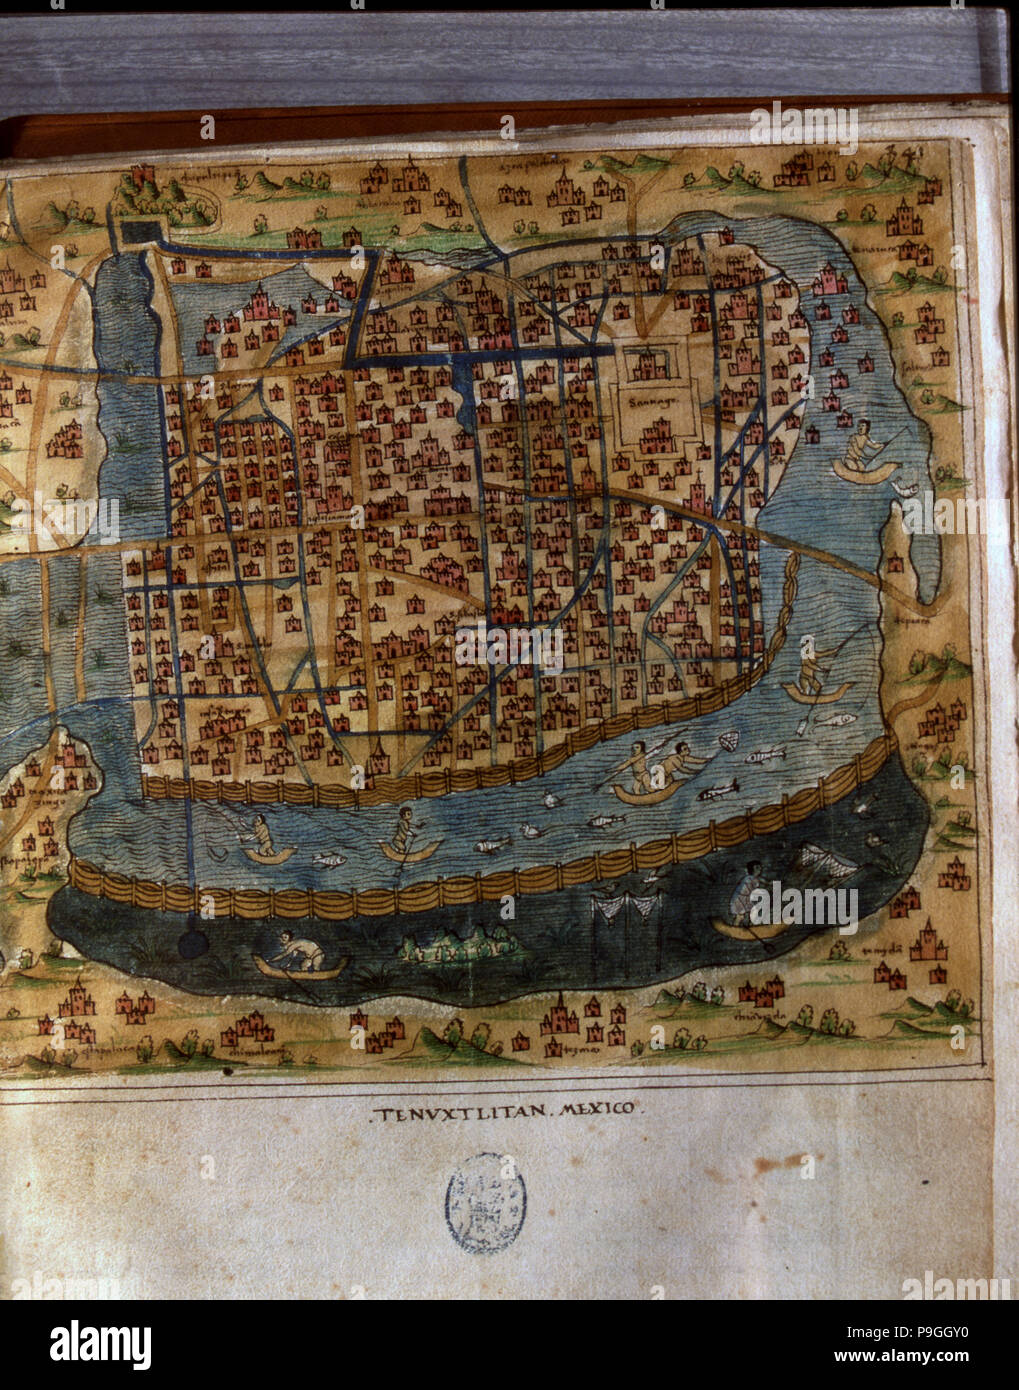 Site de Tenochtitlan, Mexico, 1560, le travail en général 'îles du monde", par le chroniqueur … Banque D'Images